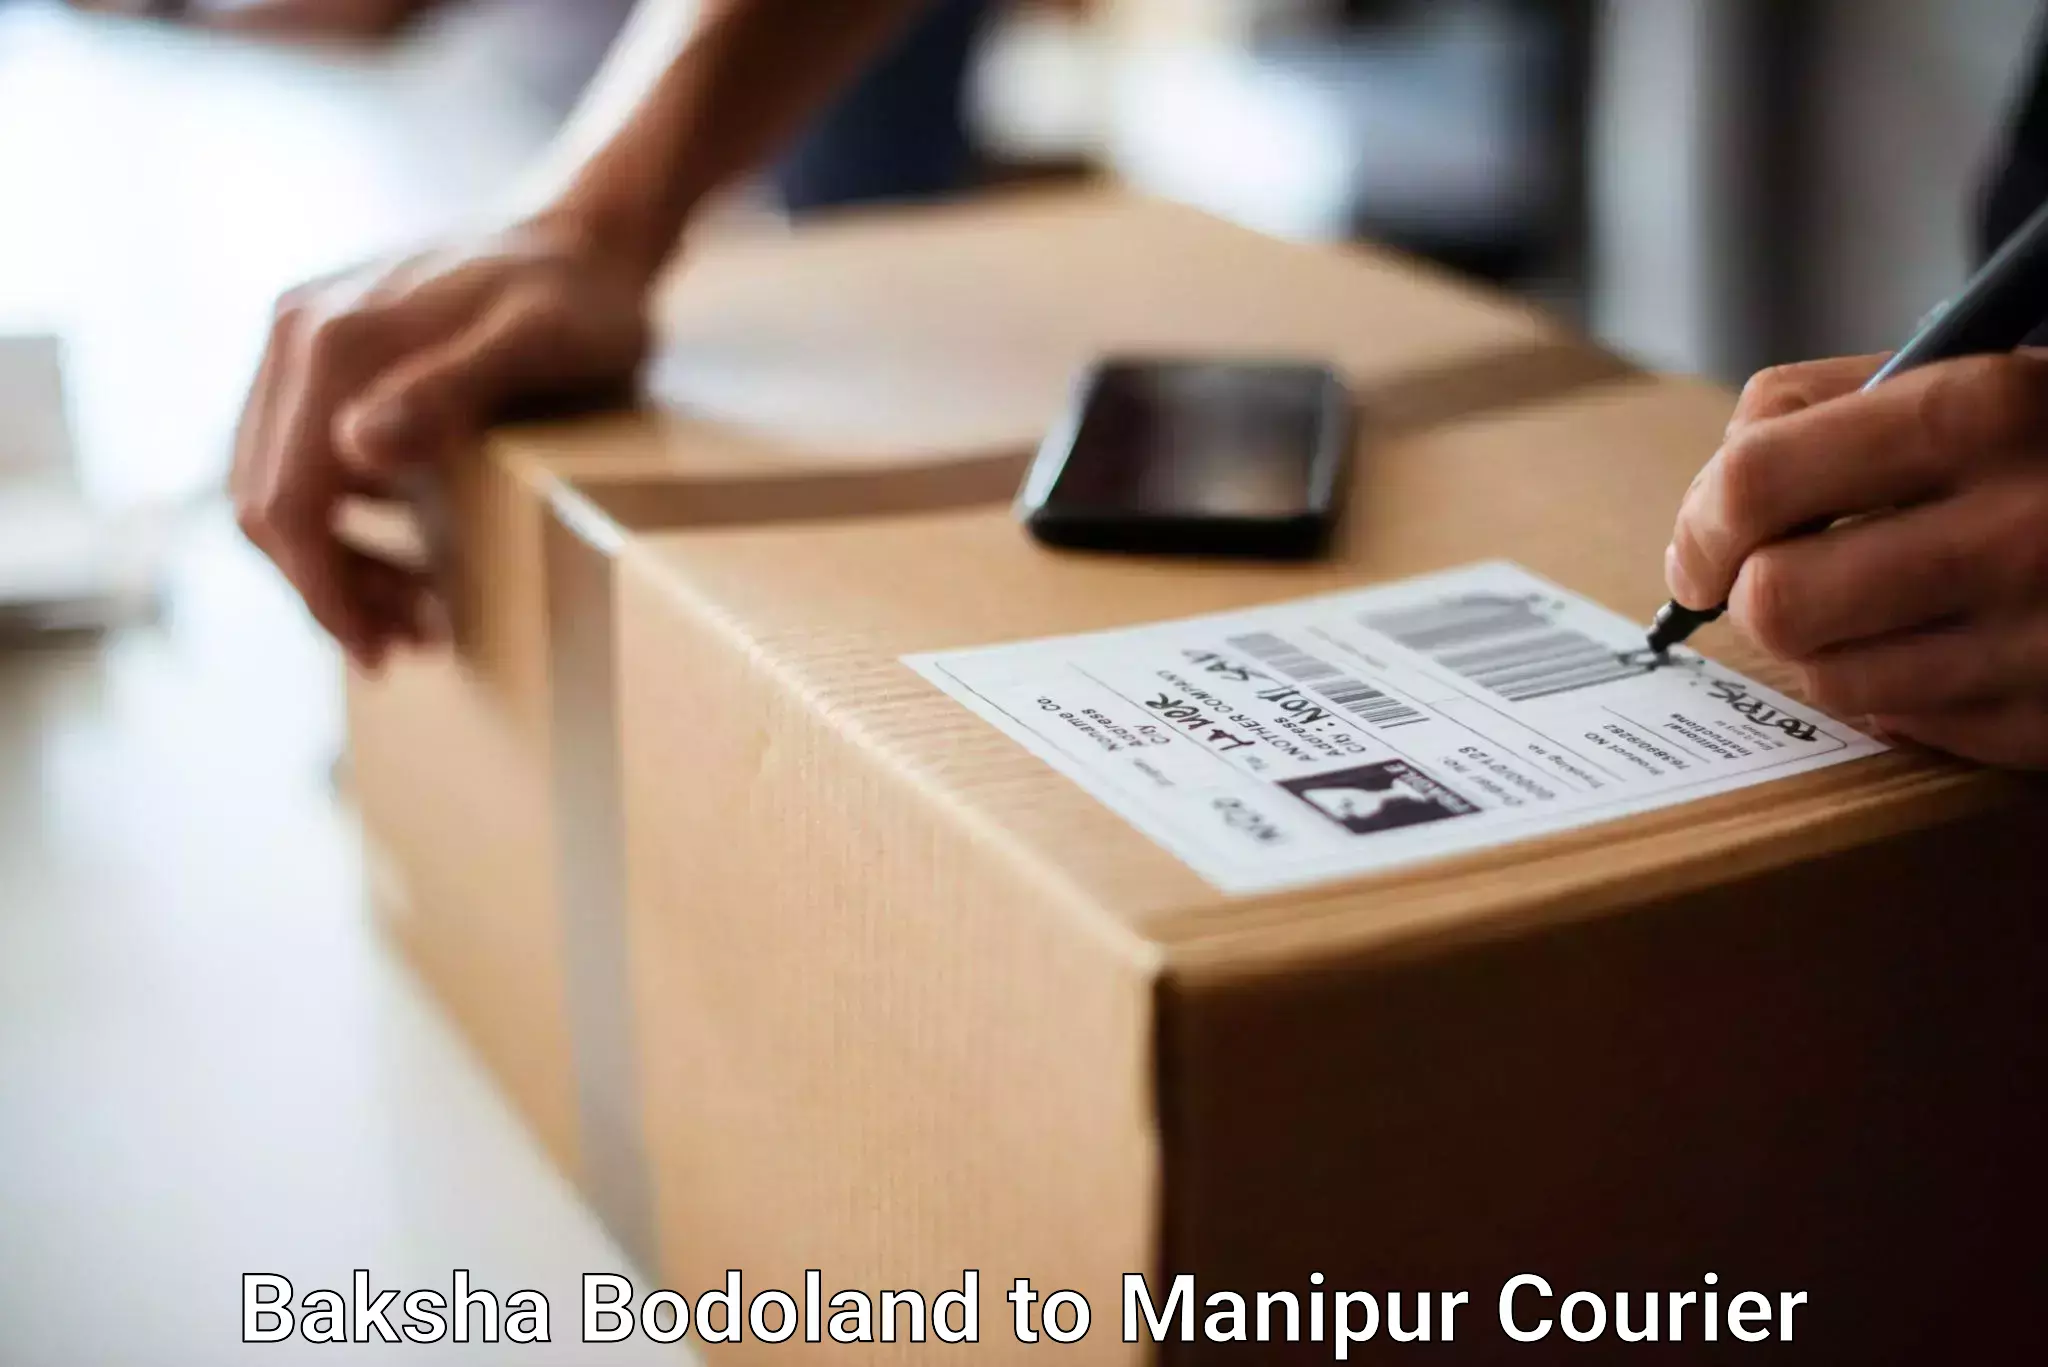 Luggage transport operations Baksha Bodoland to Imphal